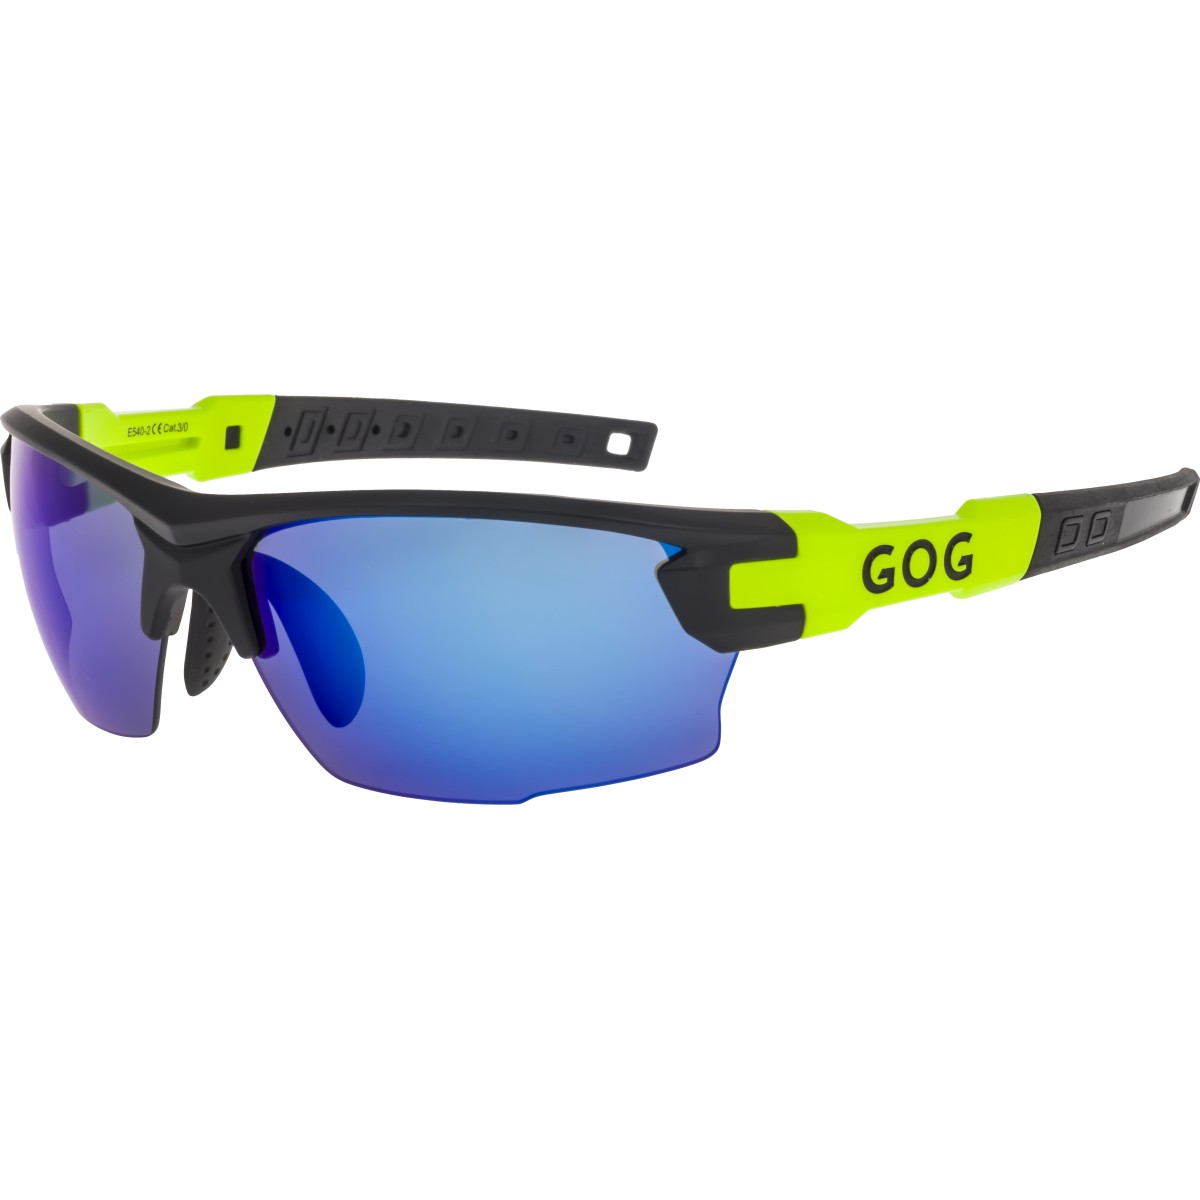 Слънчеви очила със сменяеми плаки E540-2 GOG - изглед 1